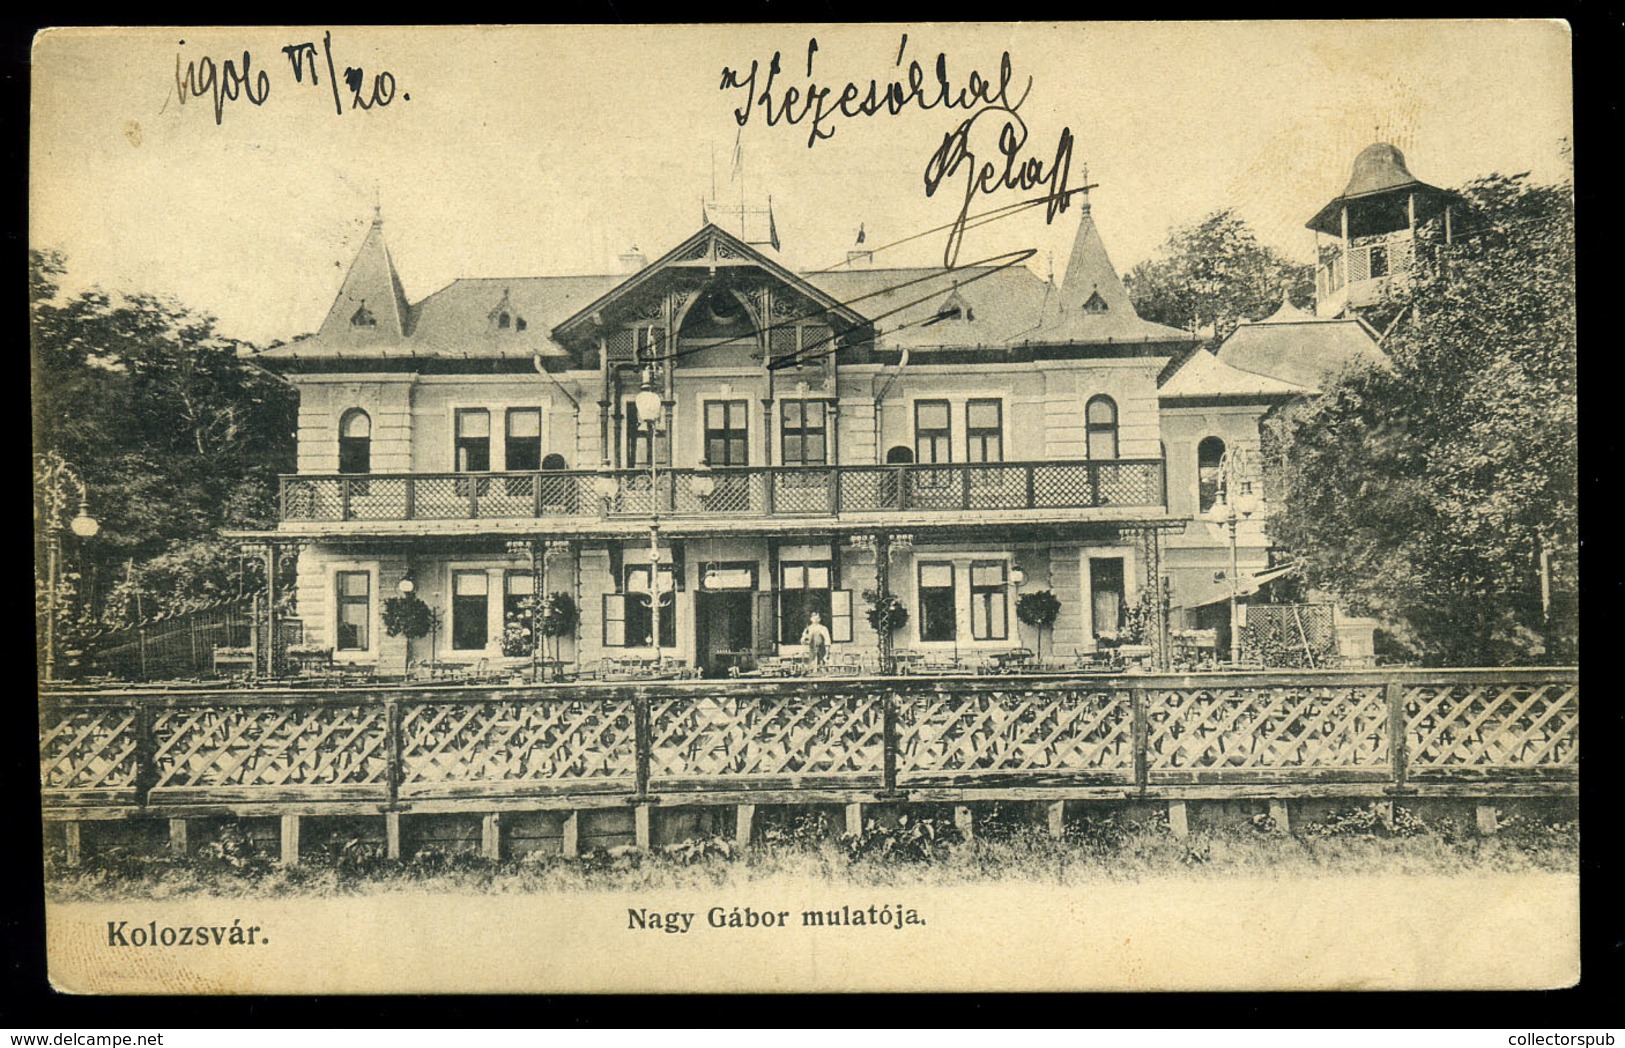 KOLOZSVÁR 1903. Nagy Gábor Mulatója, Régi Képeslap  /  1903 Gábor Nagy's Inn Vintage Pic. P.card - Hungary